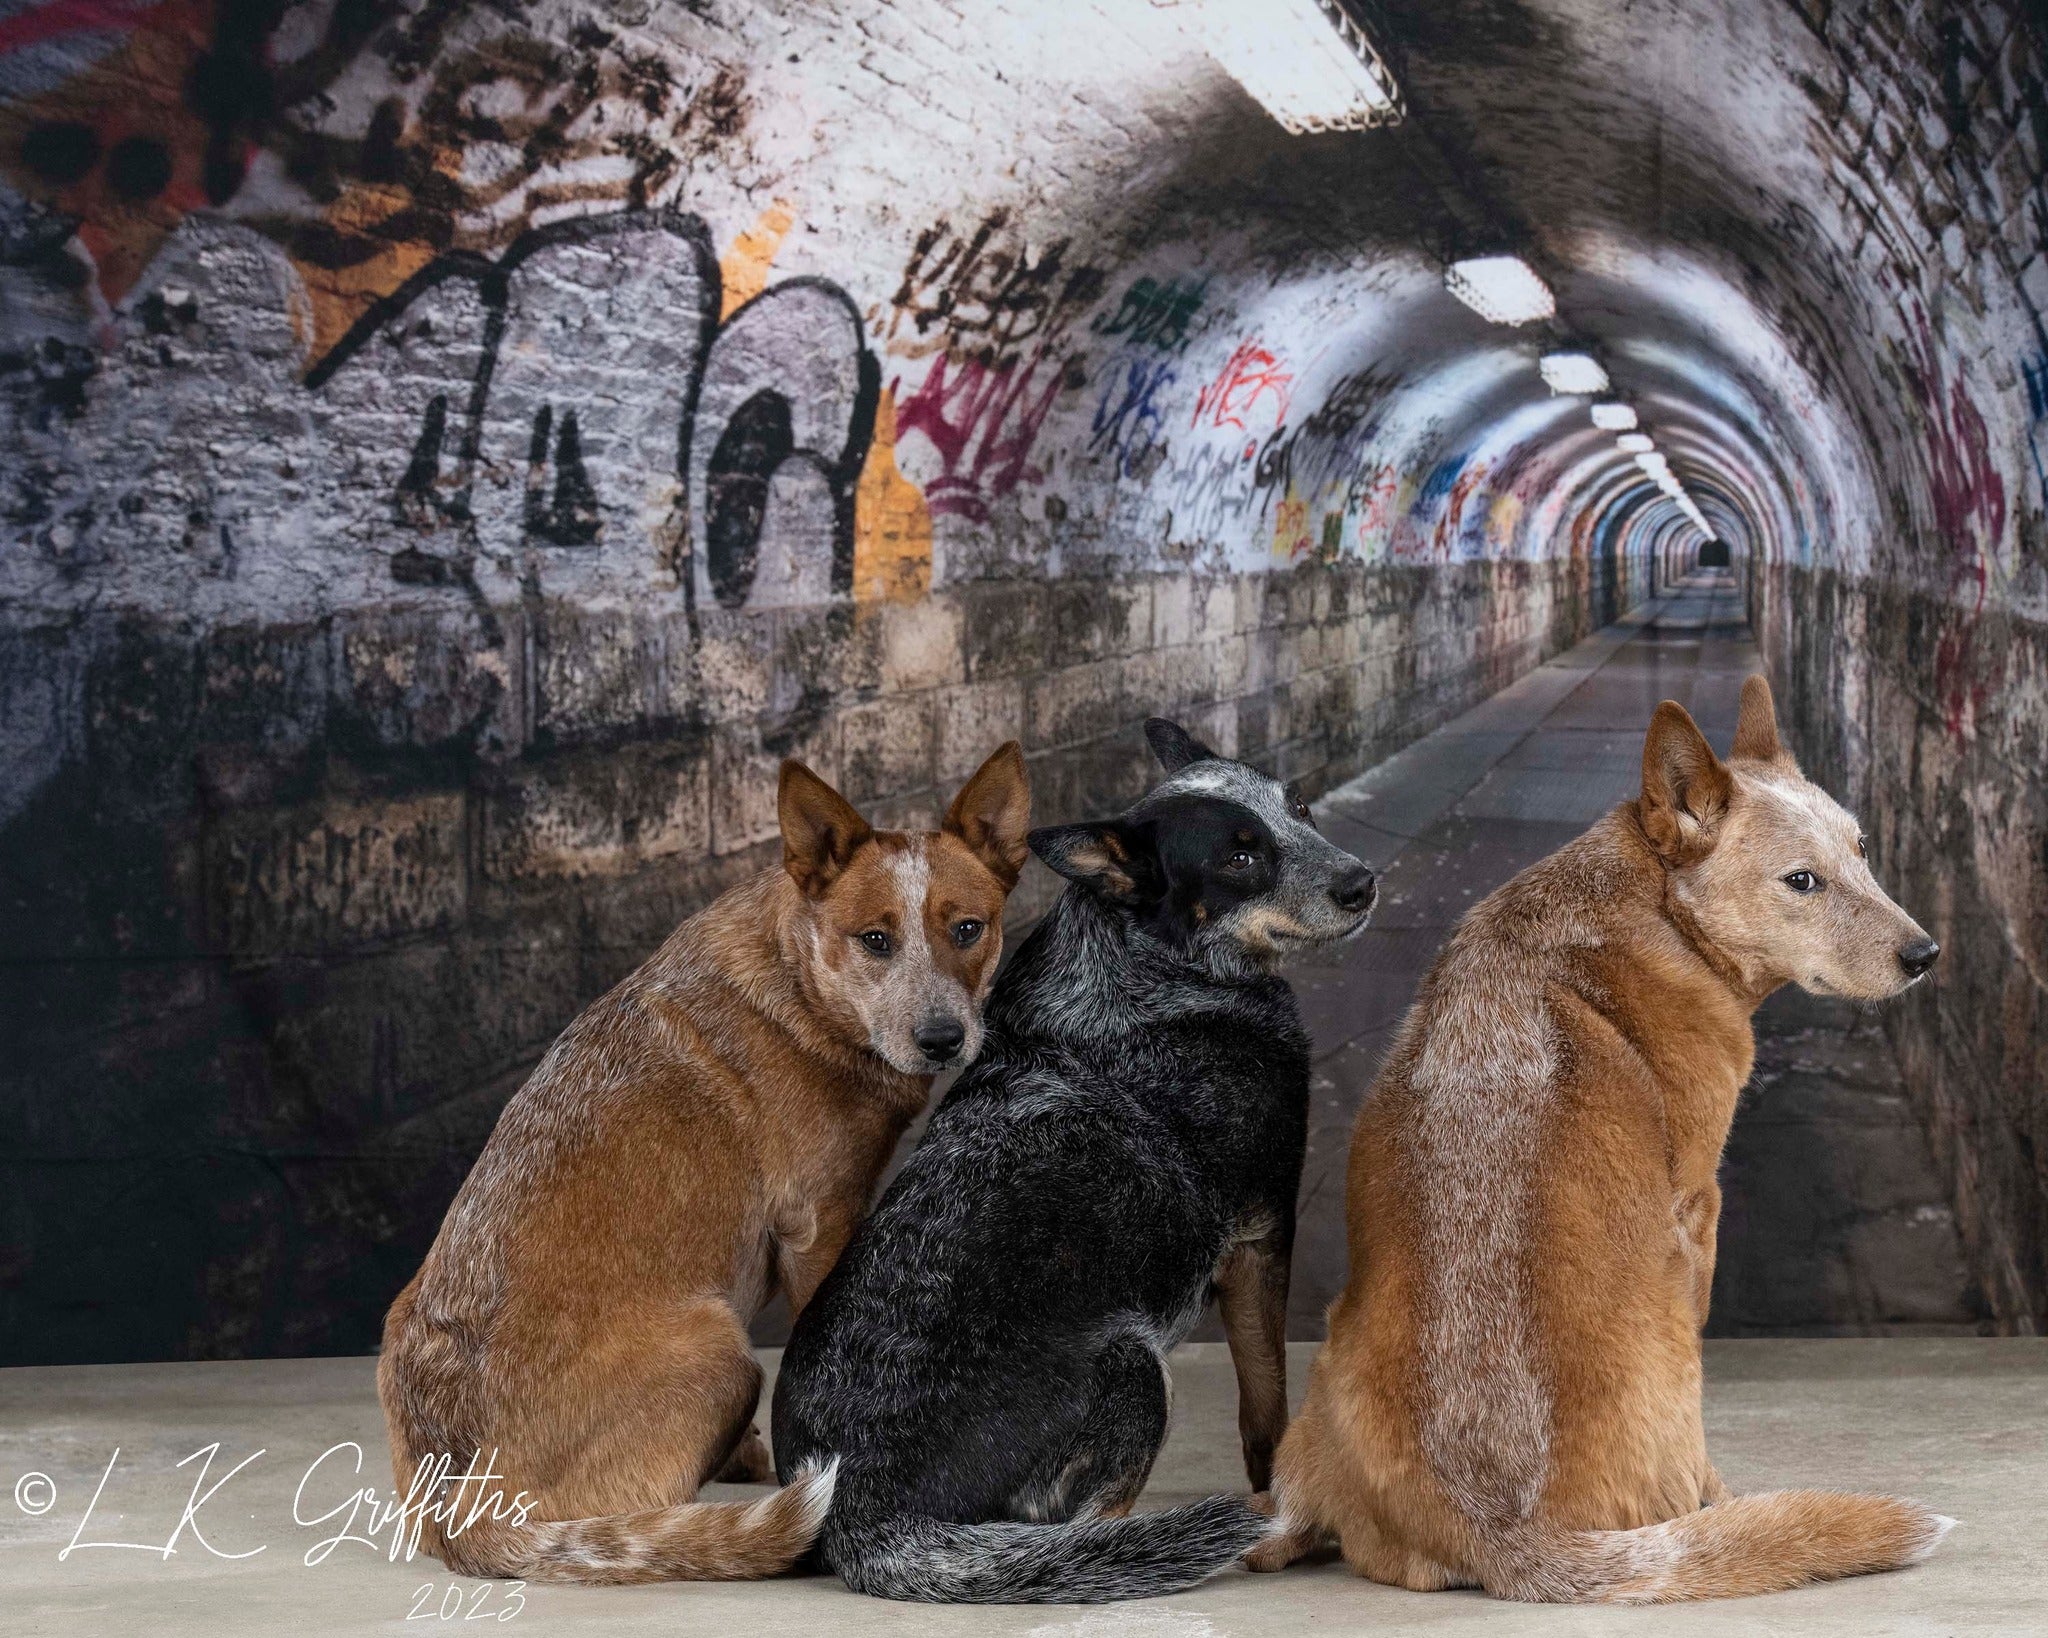 Kate Bâtiment Tunnel Mur de graffiti Toile de fond pour la photographie